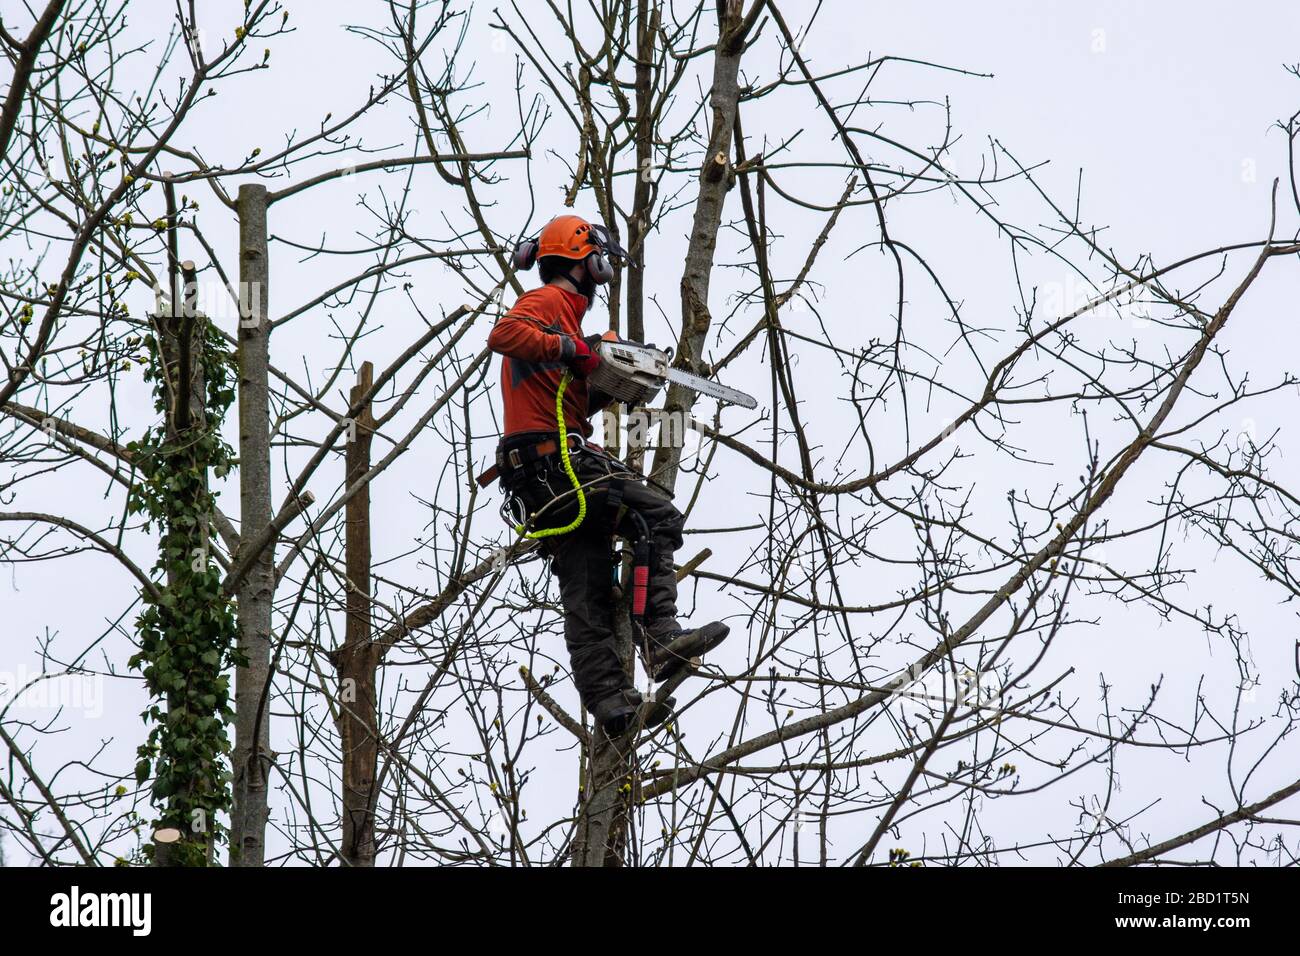 Ein Arbeiter mit einer Kettensäge hat einen Baum hochgesehen, der sich darauf vorbereitet, die Säge zu benutzen, um abgestorbene und beschädigte Äste sicher zu entfernen Stockfoto